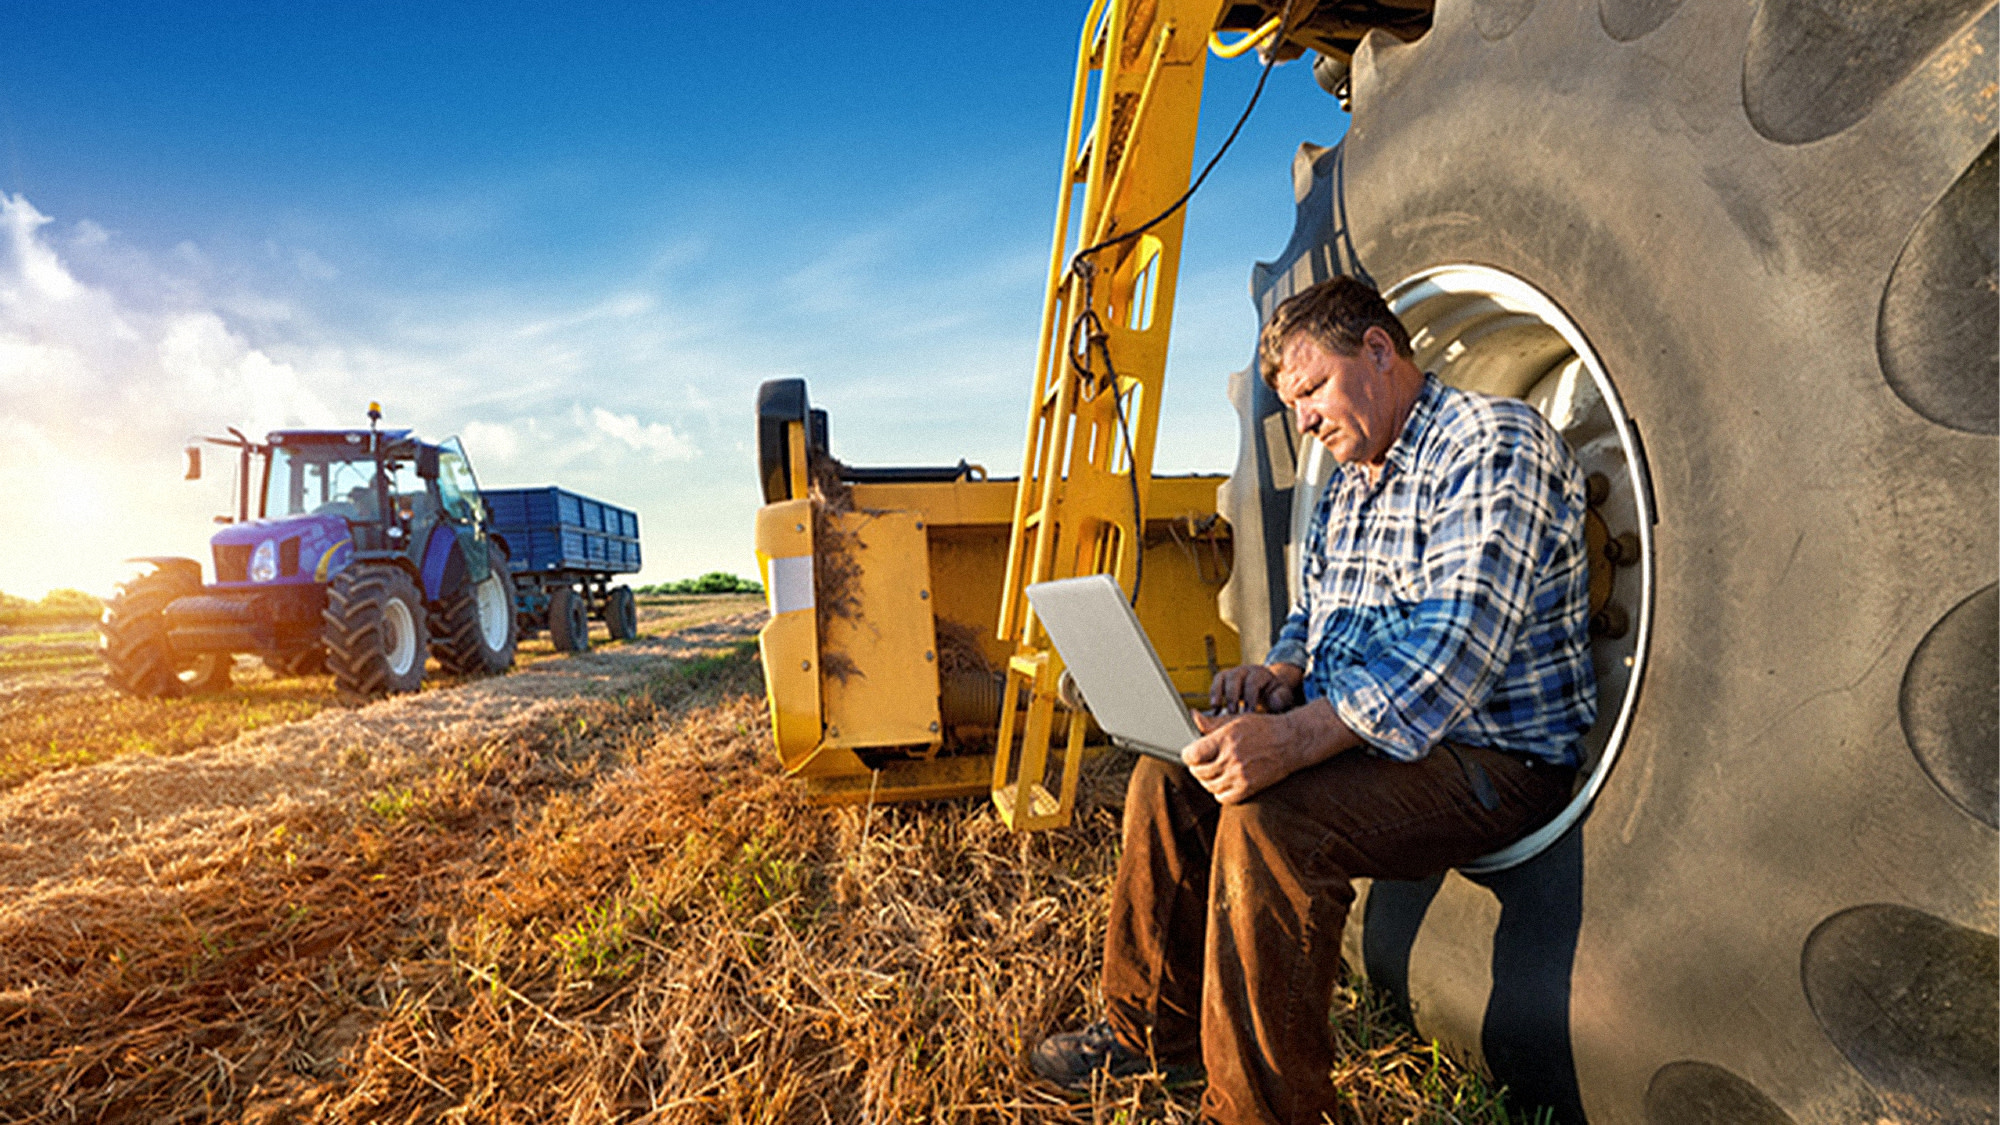 Ein Landwirt sitzt in einem großen Reifen und nutzt sein Laptop während der Arbeit auf dem Feld, im Hintergrund steht ein Traktor mit Anhänger.